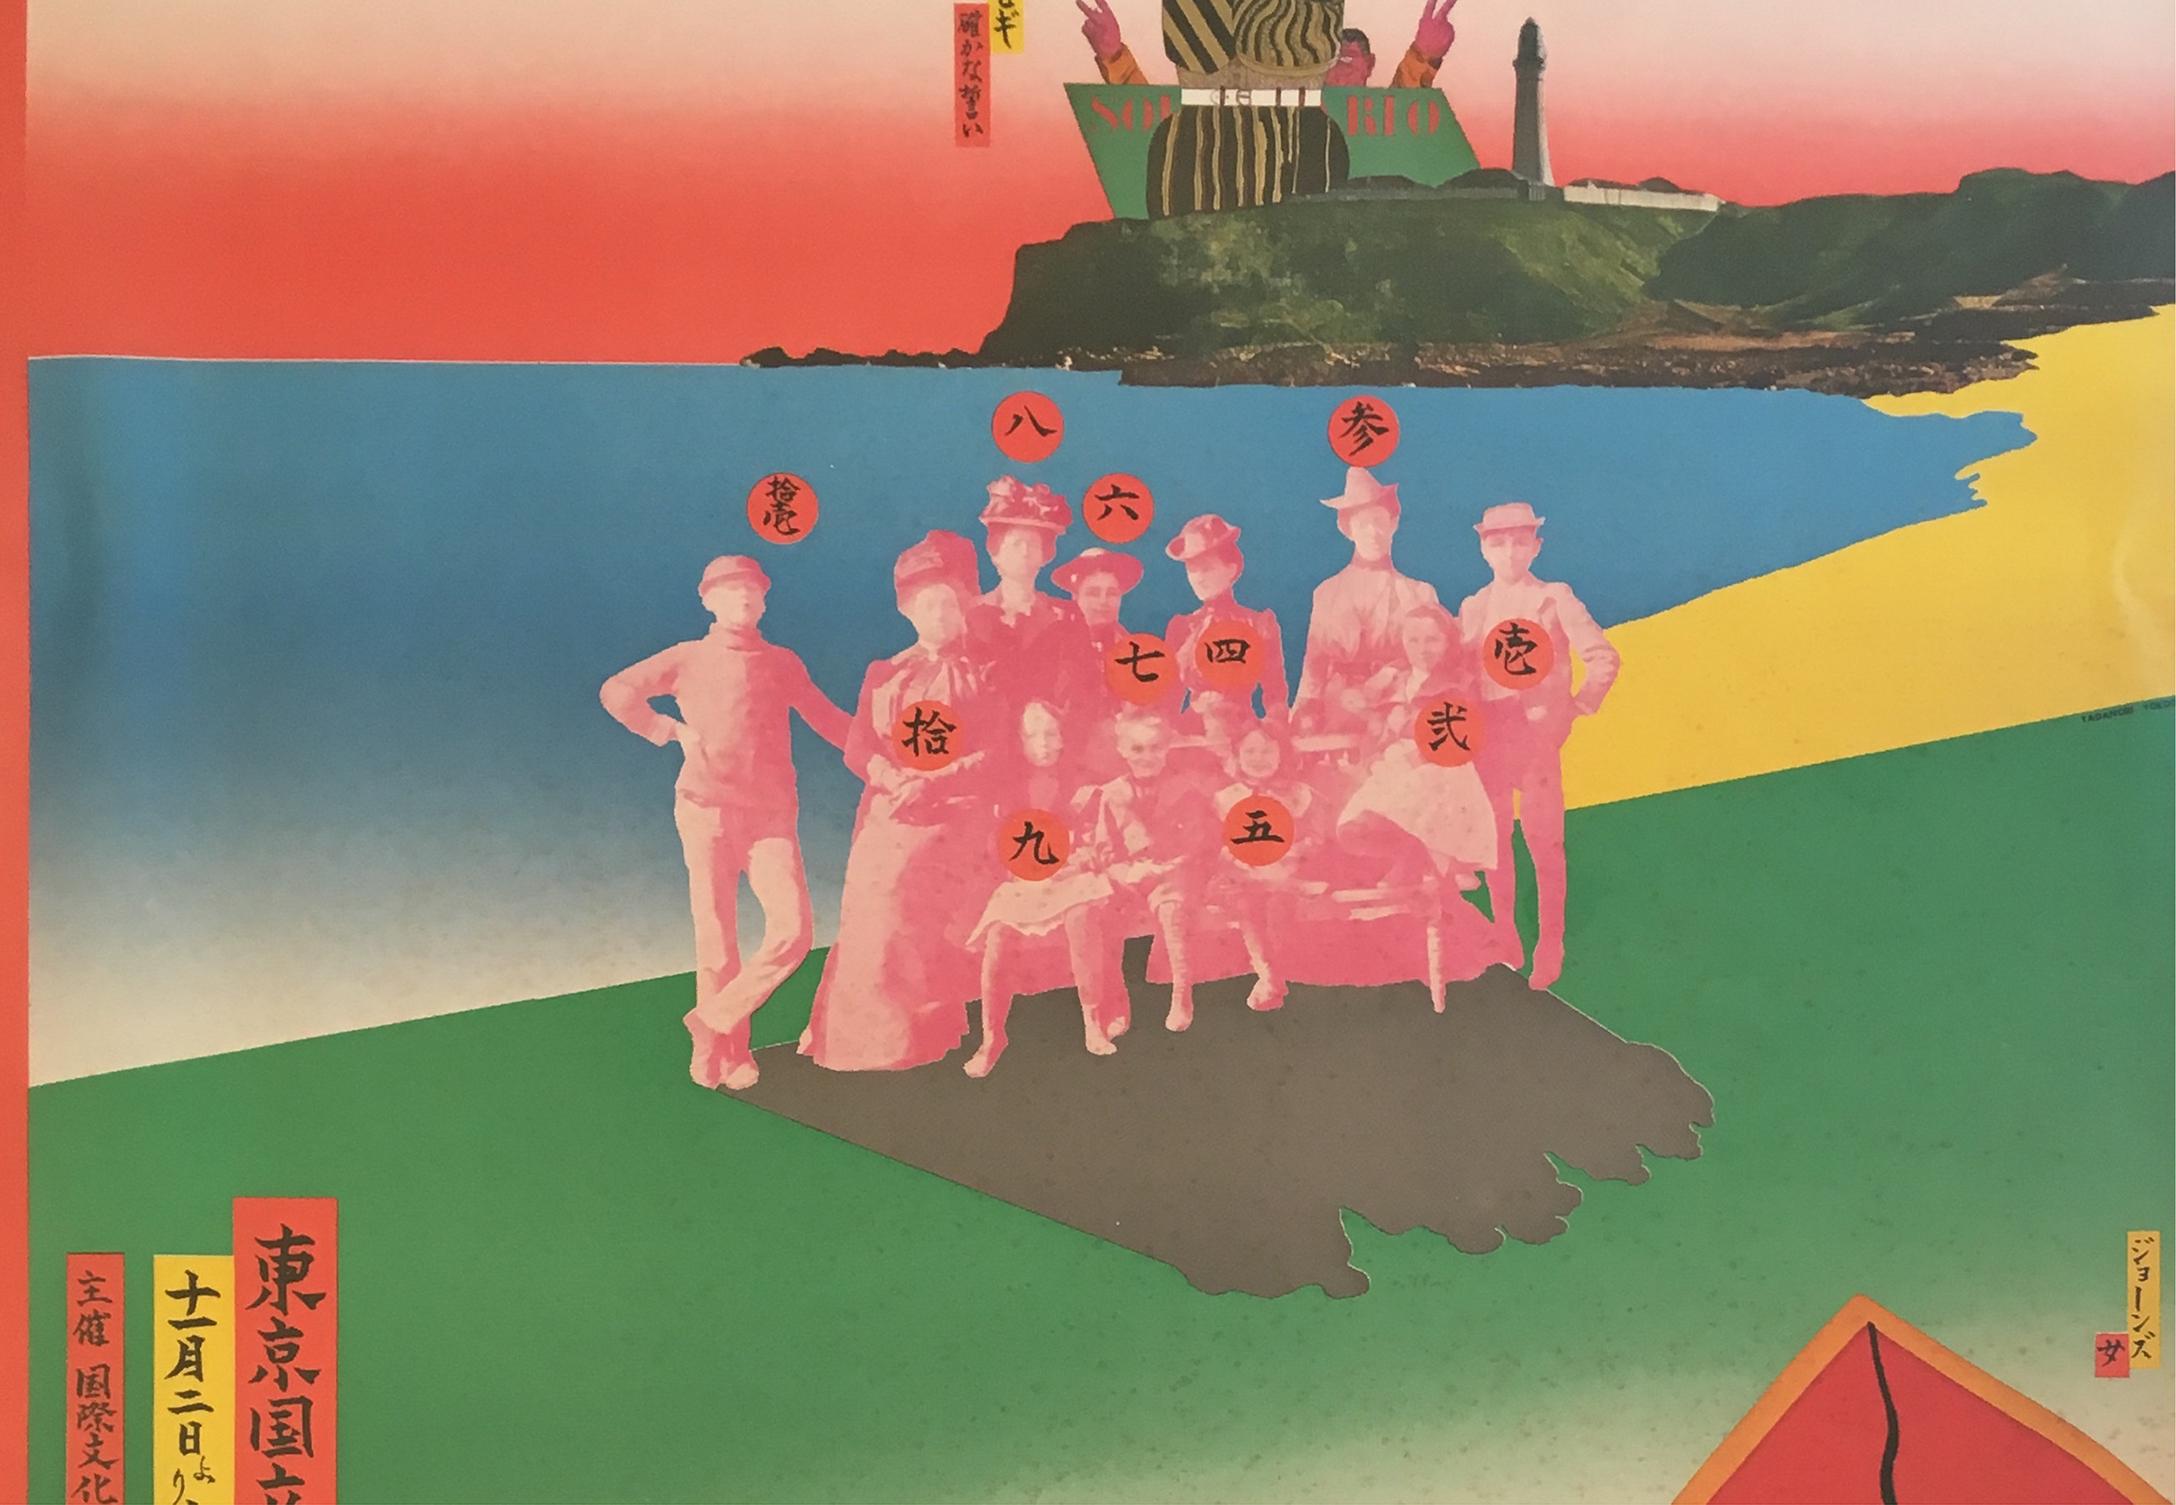 Tadanori Yokoo
« La 6e exposition internationale d'estampes de Tokyo »
Musée national d'art moderne, Tokyo, 1968
Affiche en lithographie offset
42 x 30 pouces (image)
45 1/2 x 33 1/2 x 1 1/2 pouces (cadre)
Signé et portant le cachet de l'Artistics